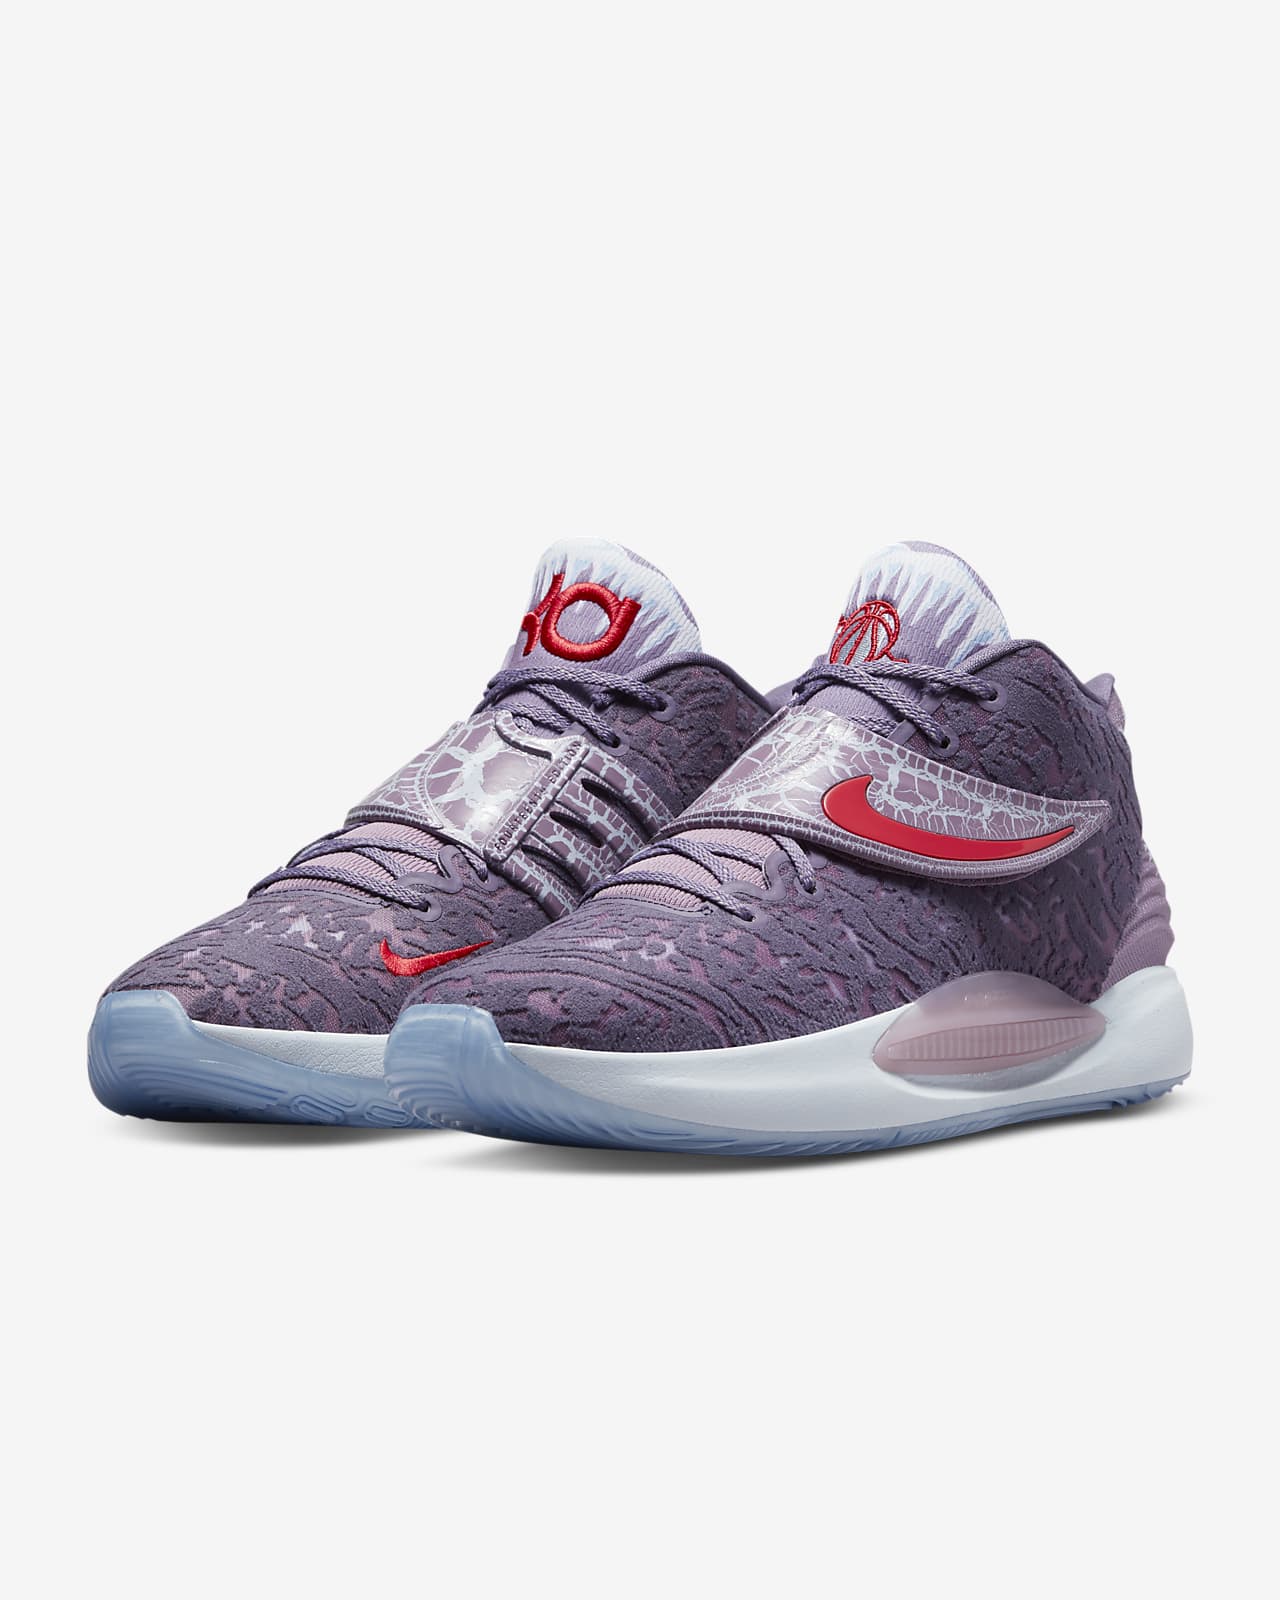 kd 14 on sale | KD14 Basketball Shoes. Nike.com